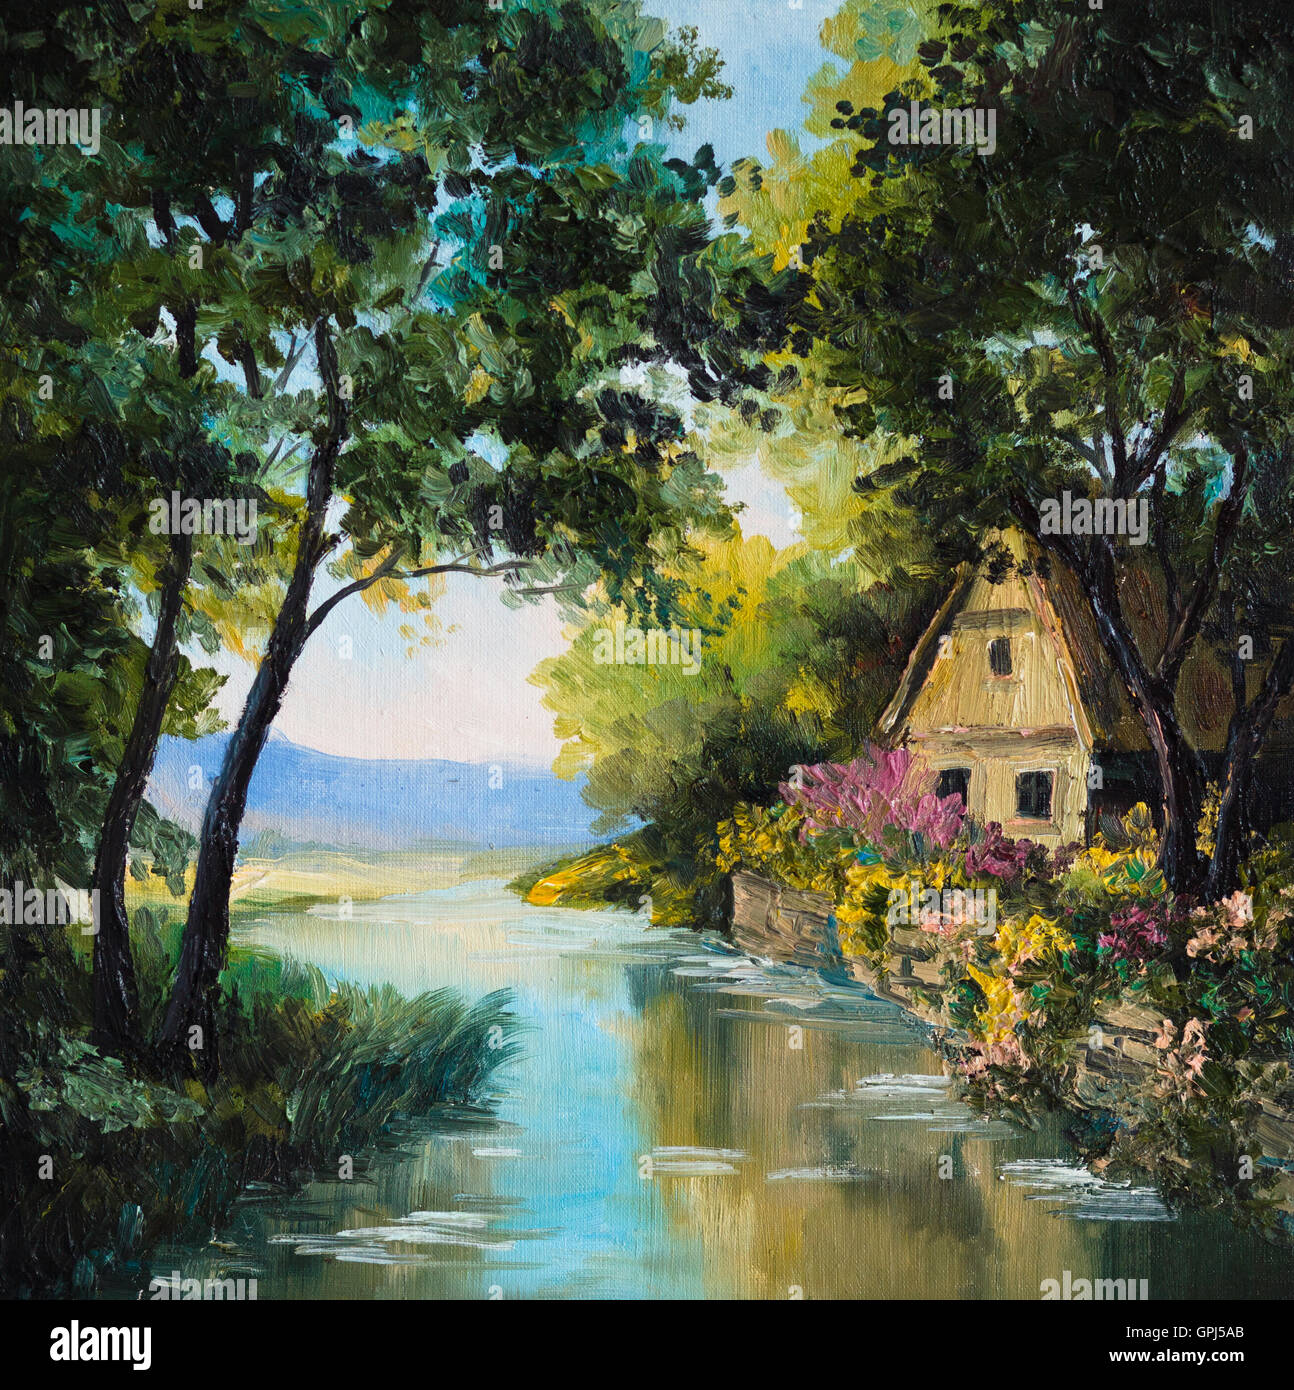 Huile sur toile - maison près de la rivière, arbre, papier peint, de l'eau Banque D'Images